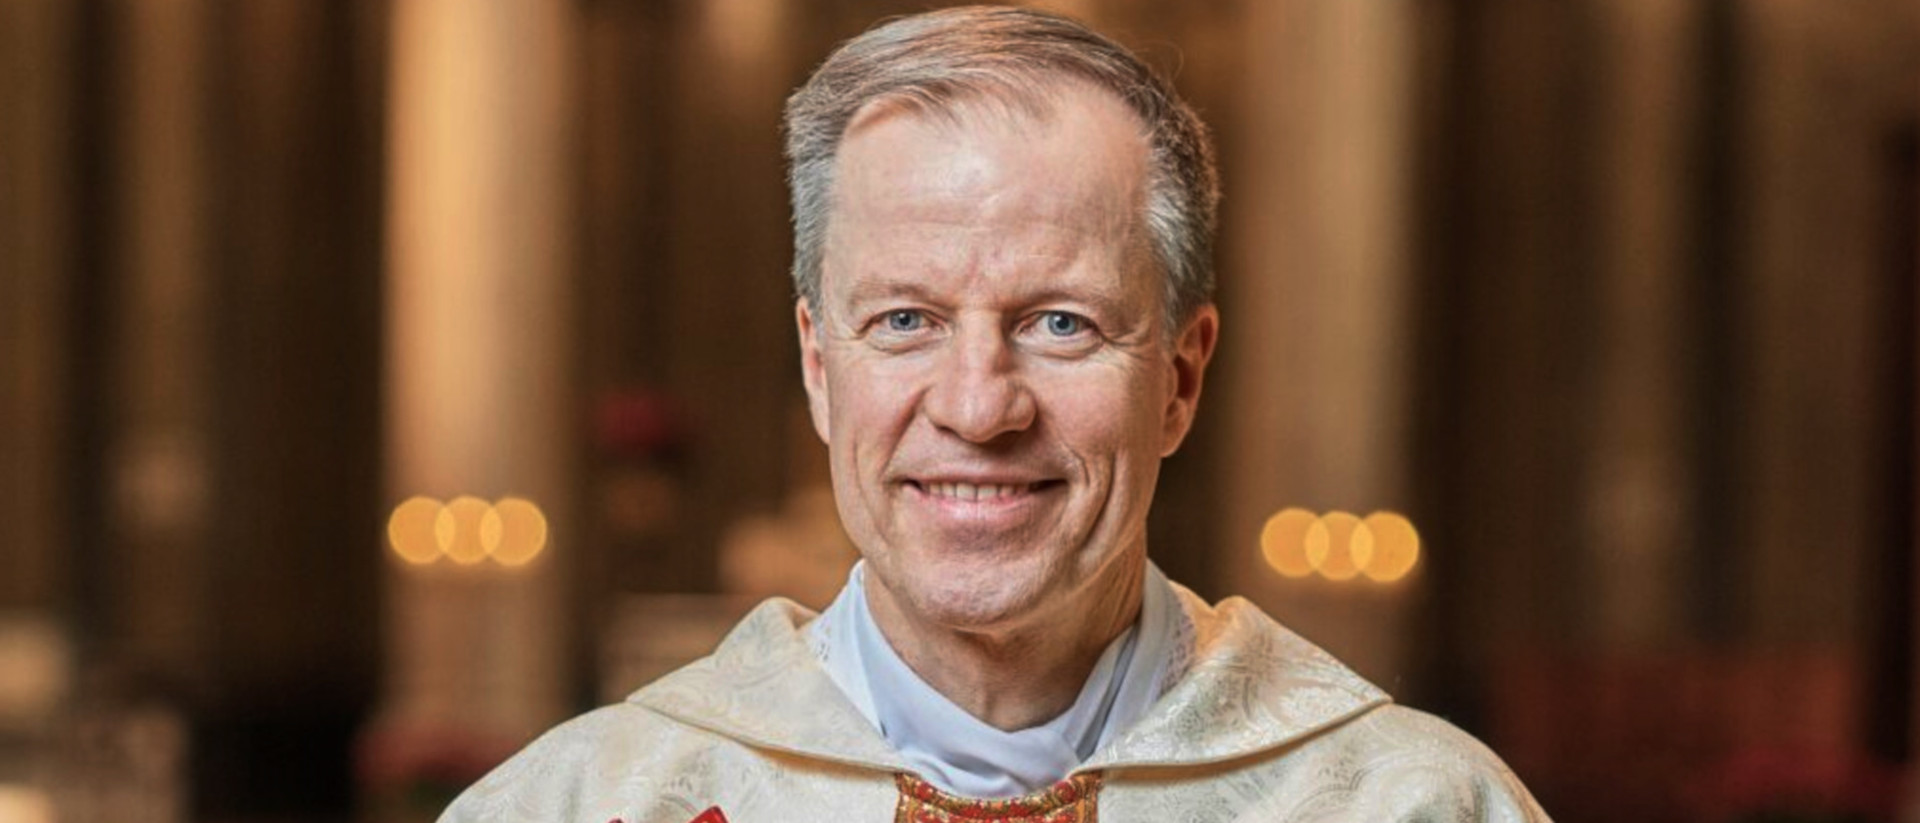 Pfarradministrator Martin Scheibli wurde nicht zum Pfarrer gewählt.